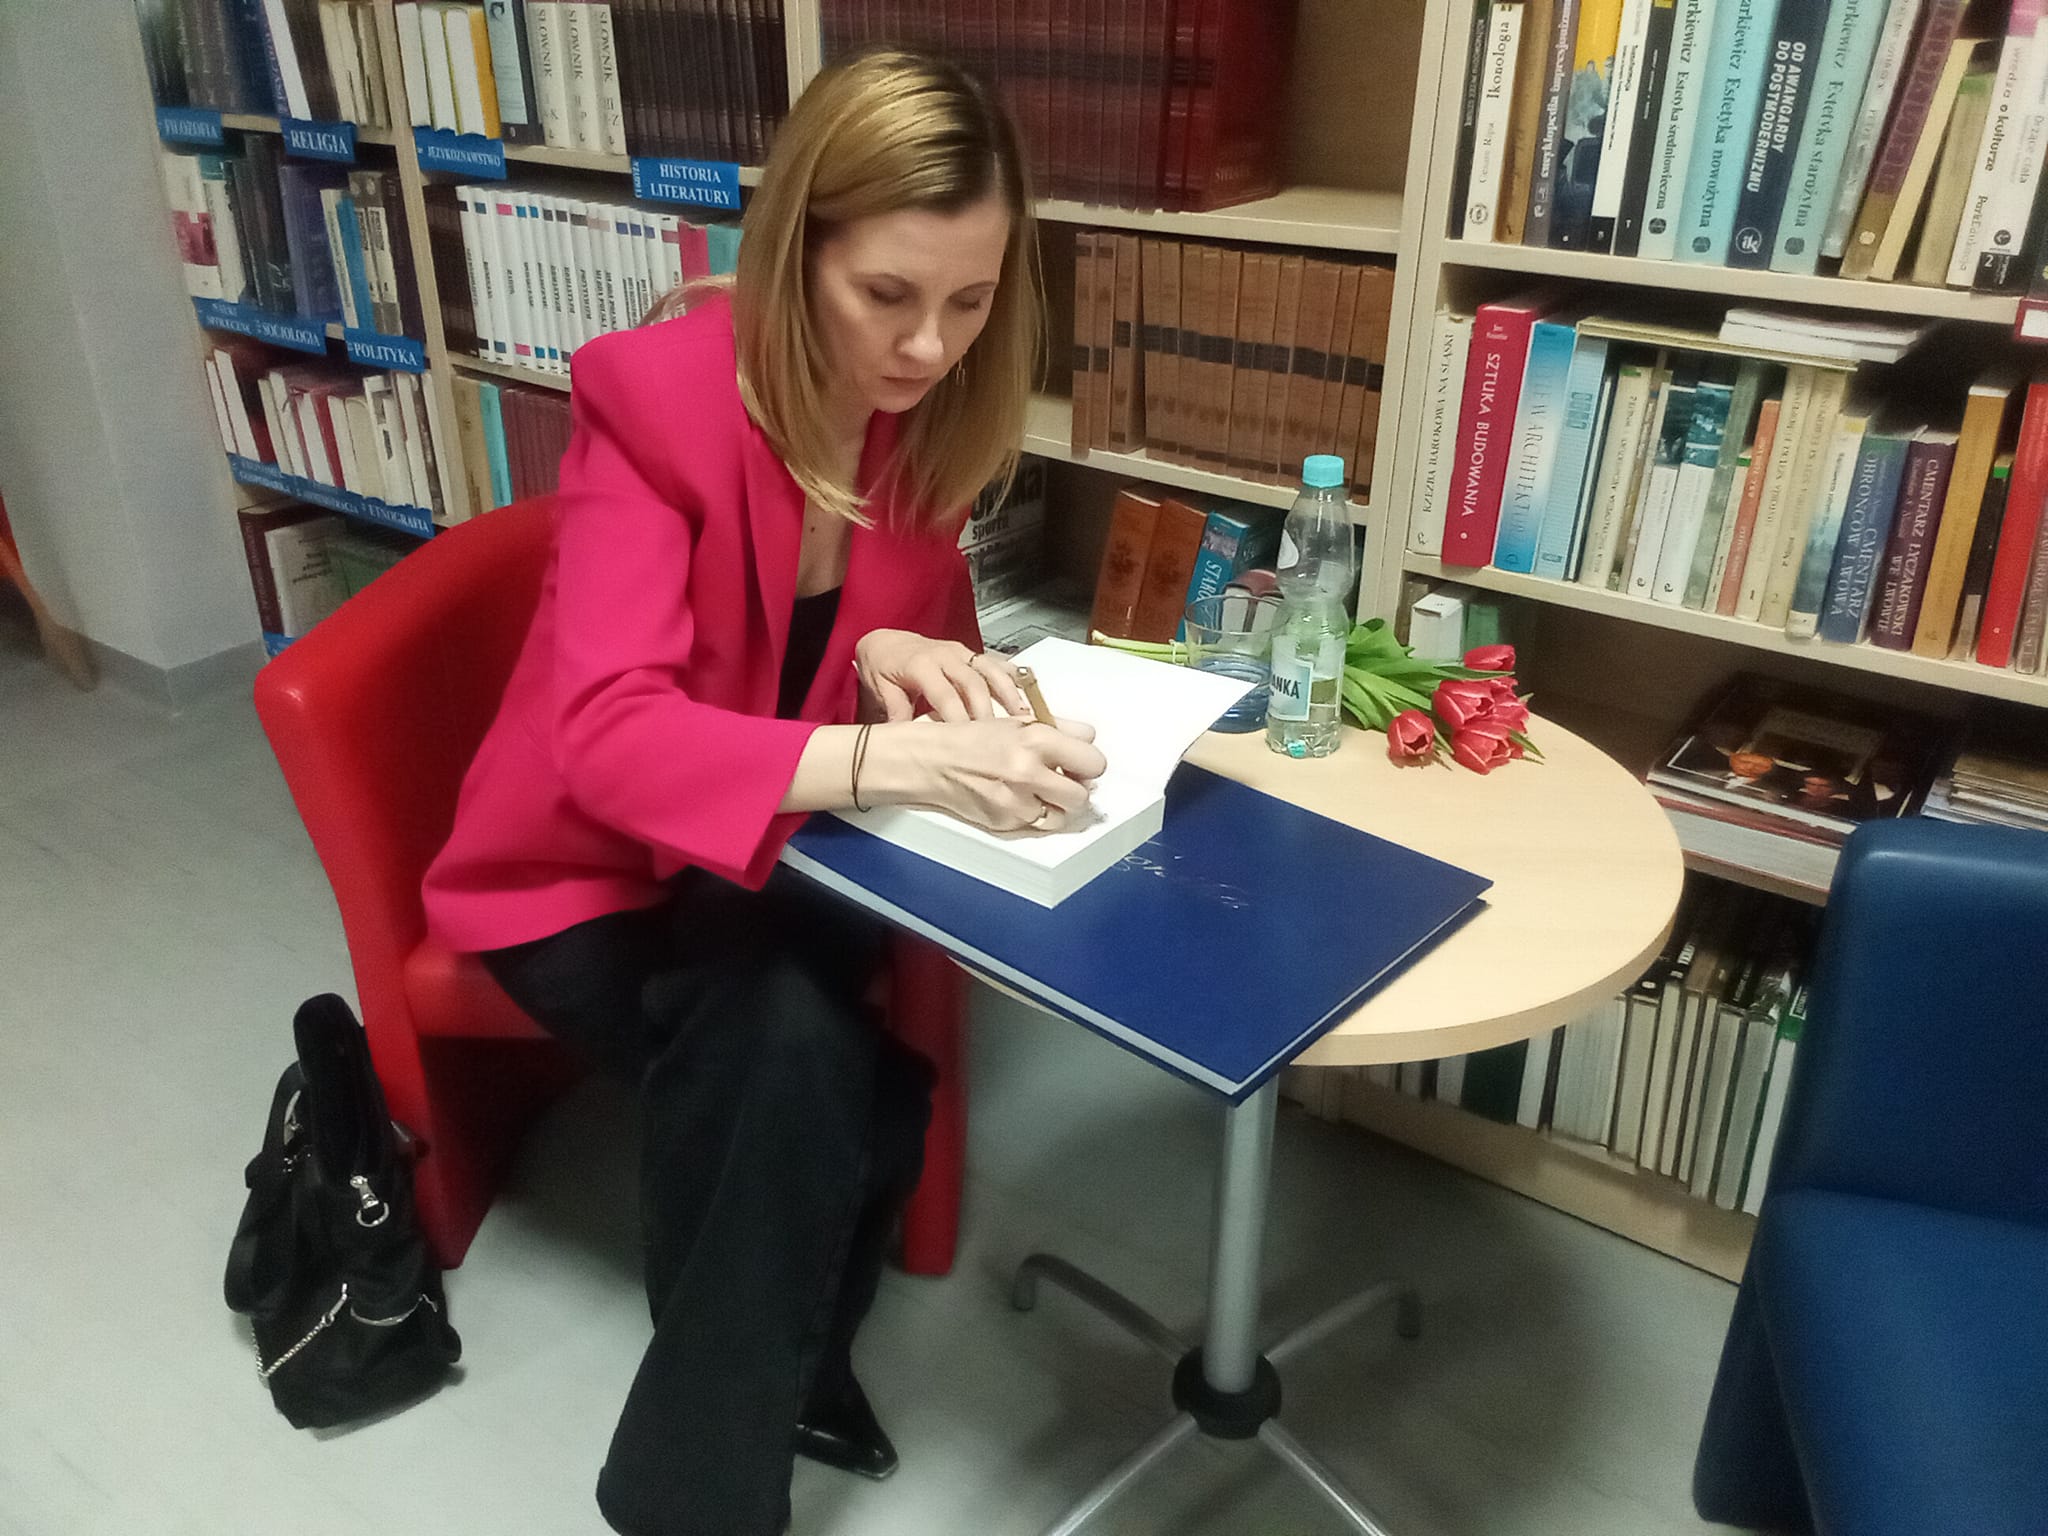 Czytelnia biblioteki, spotkanie autorskie z Joanną Opiat-Bojarską, kobieta siedzi w fotelu i wpisuje się do księgi pamiątkowej